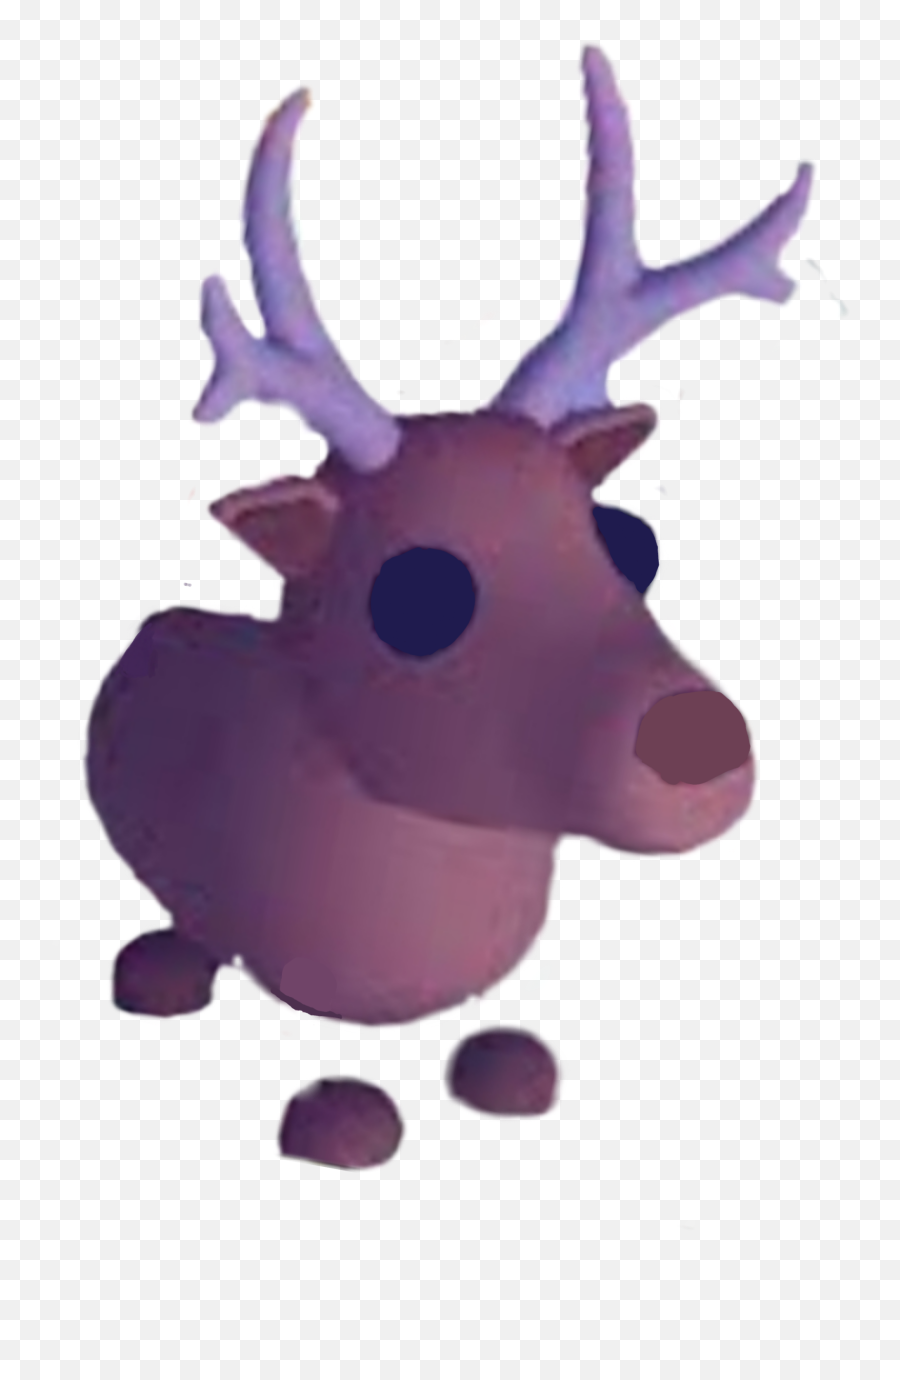 Adoptme Reindeer Adopt Me Sticker - Reindeer From Adopt Me Emoji,Reindeer Emoji